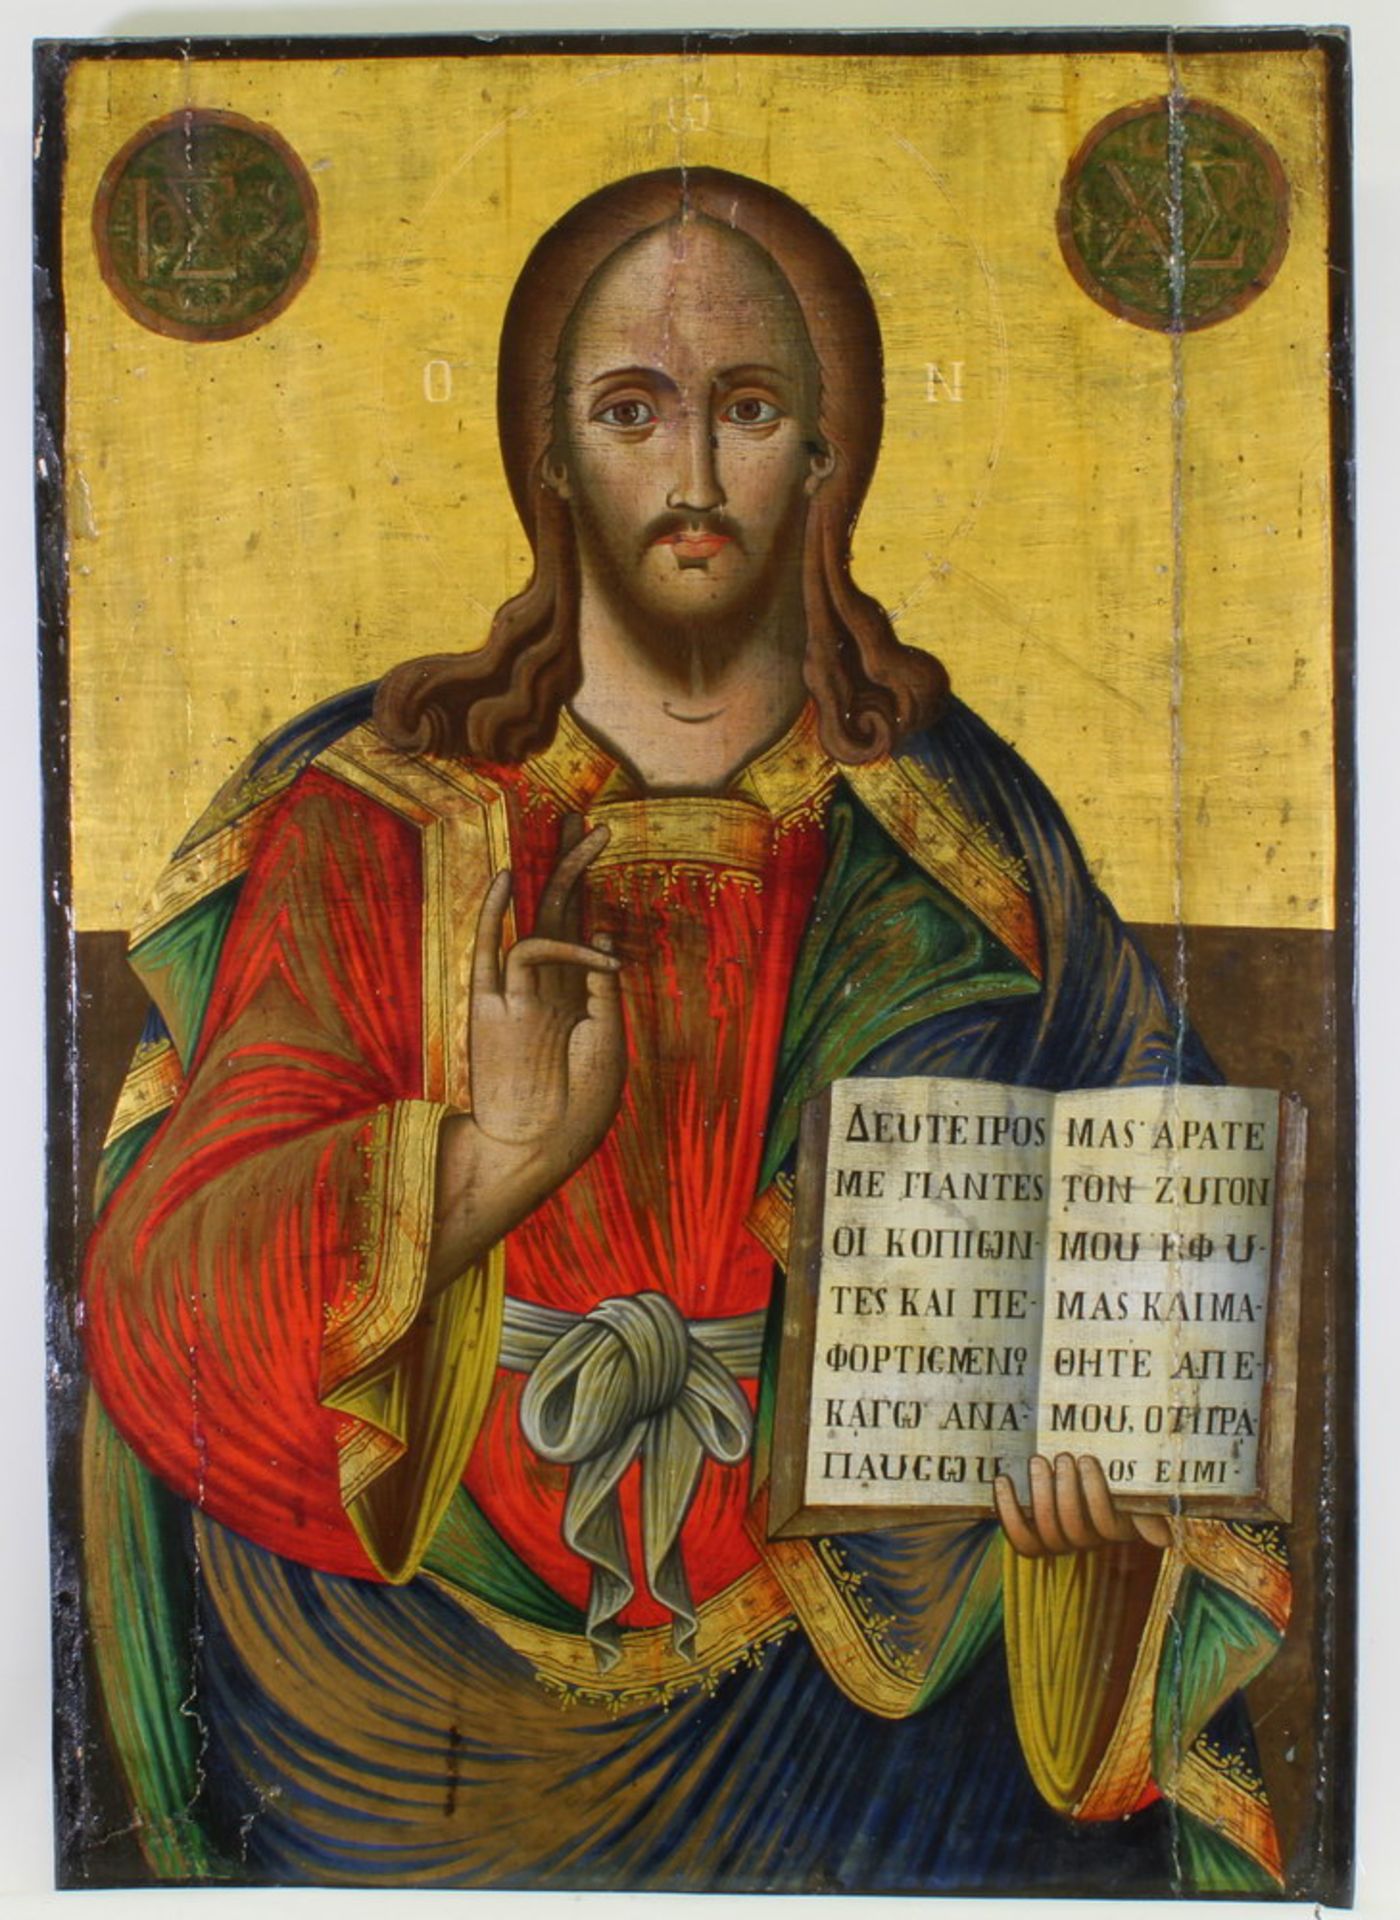 Große Ikone, Tempera auf Holz, "Christus Pantokrator", Griechenland, 19. Jh., Goldgrund, 83 x 58 cm,